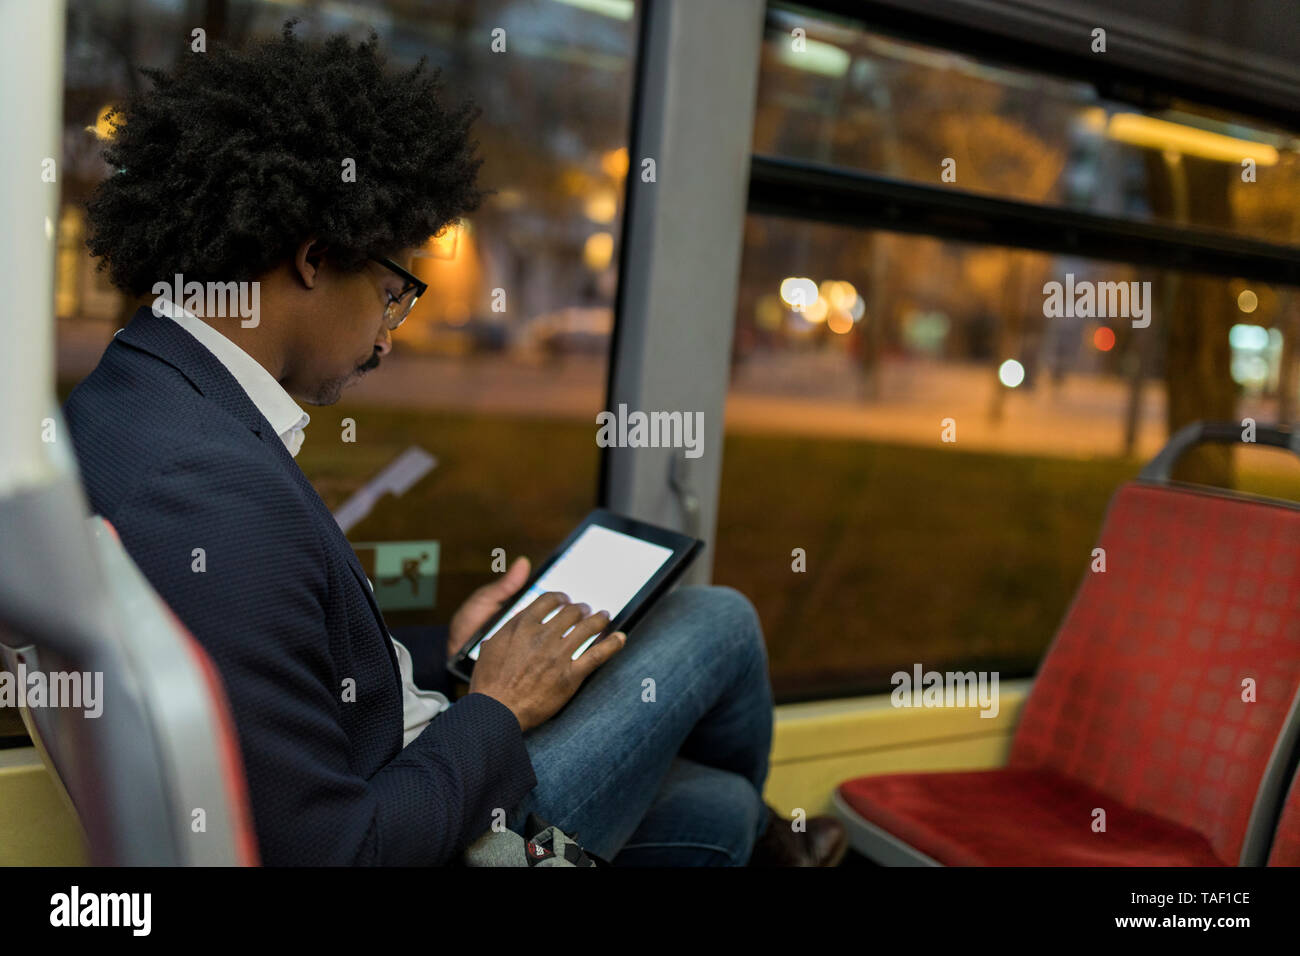 Espagne, Barcelone, homme d'affaires dans un tram la nuit à l'aide de tablet Banque D'Images